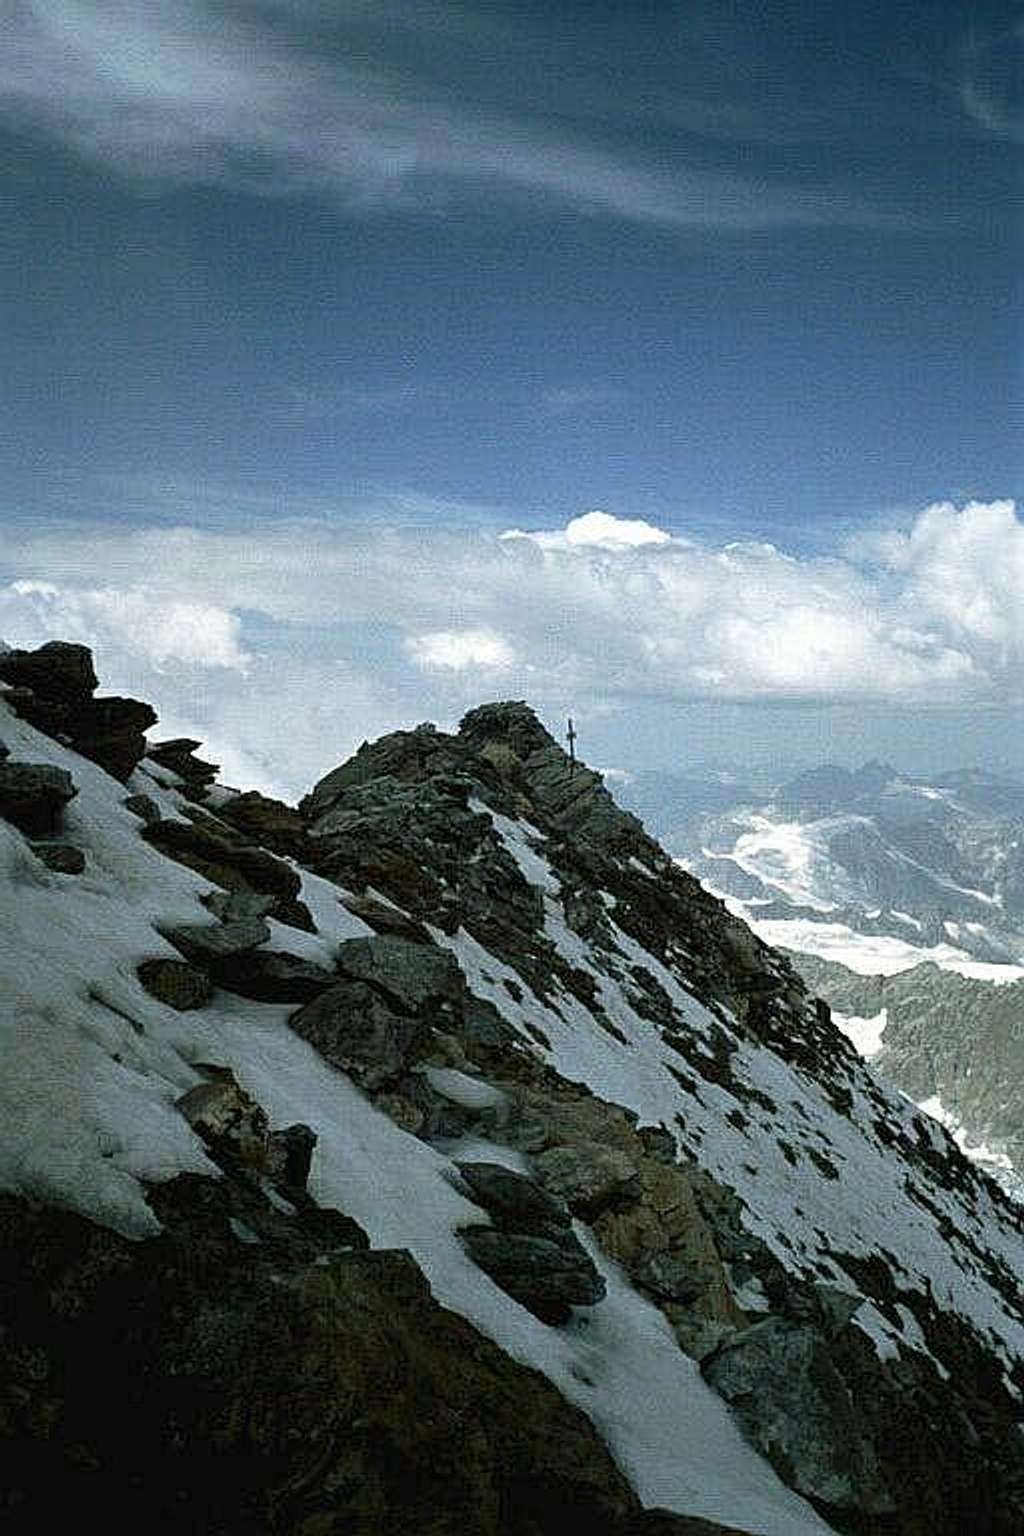 The summit of Matterhorn